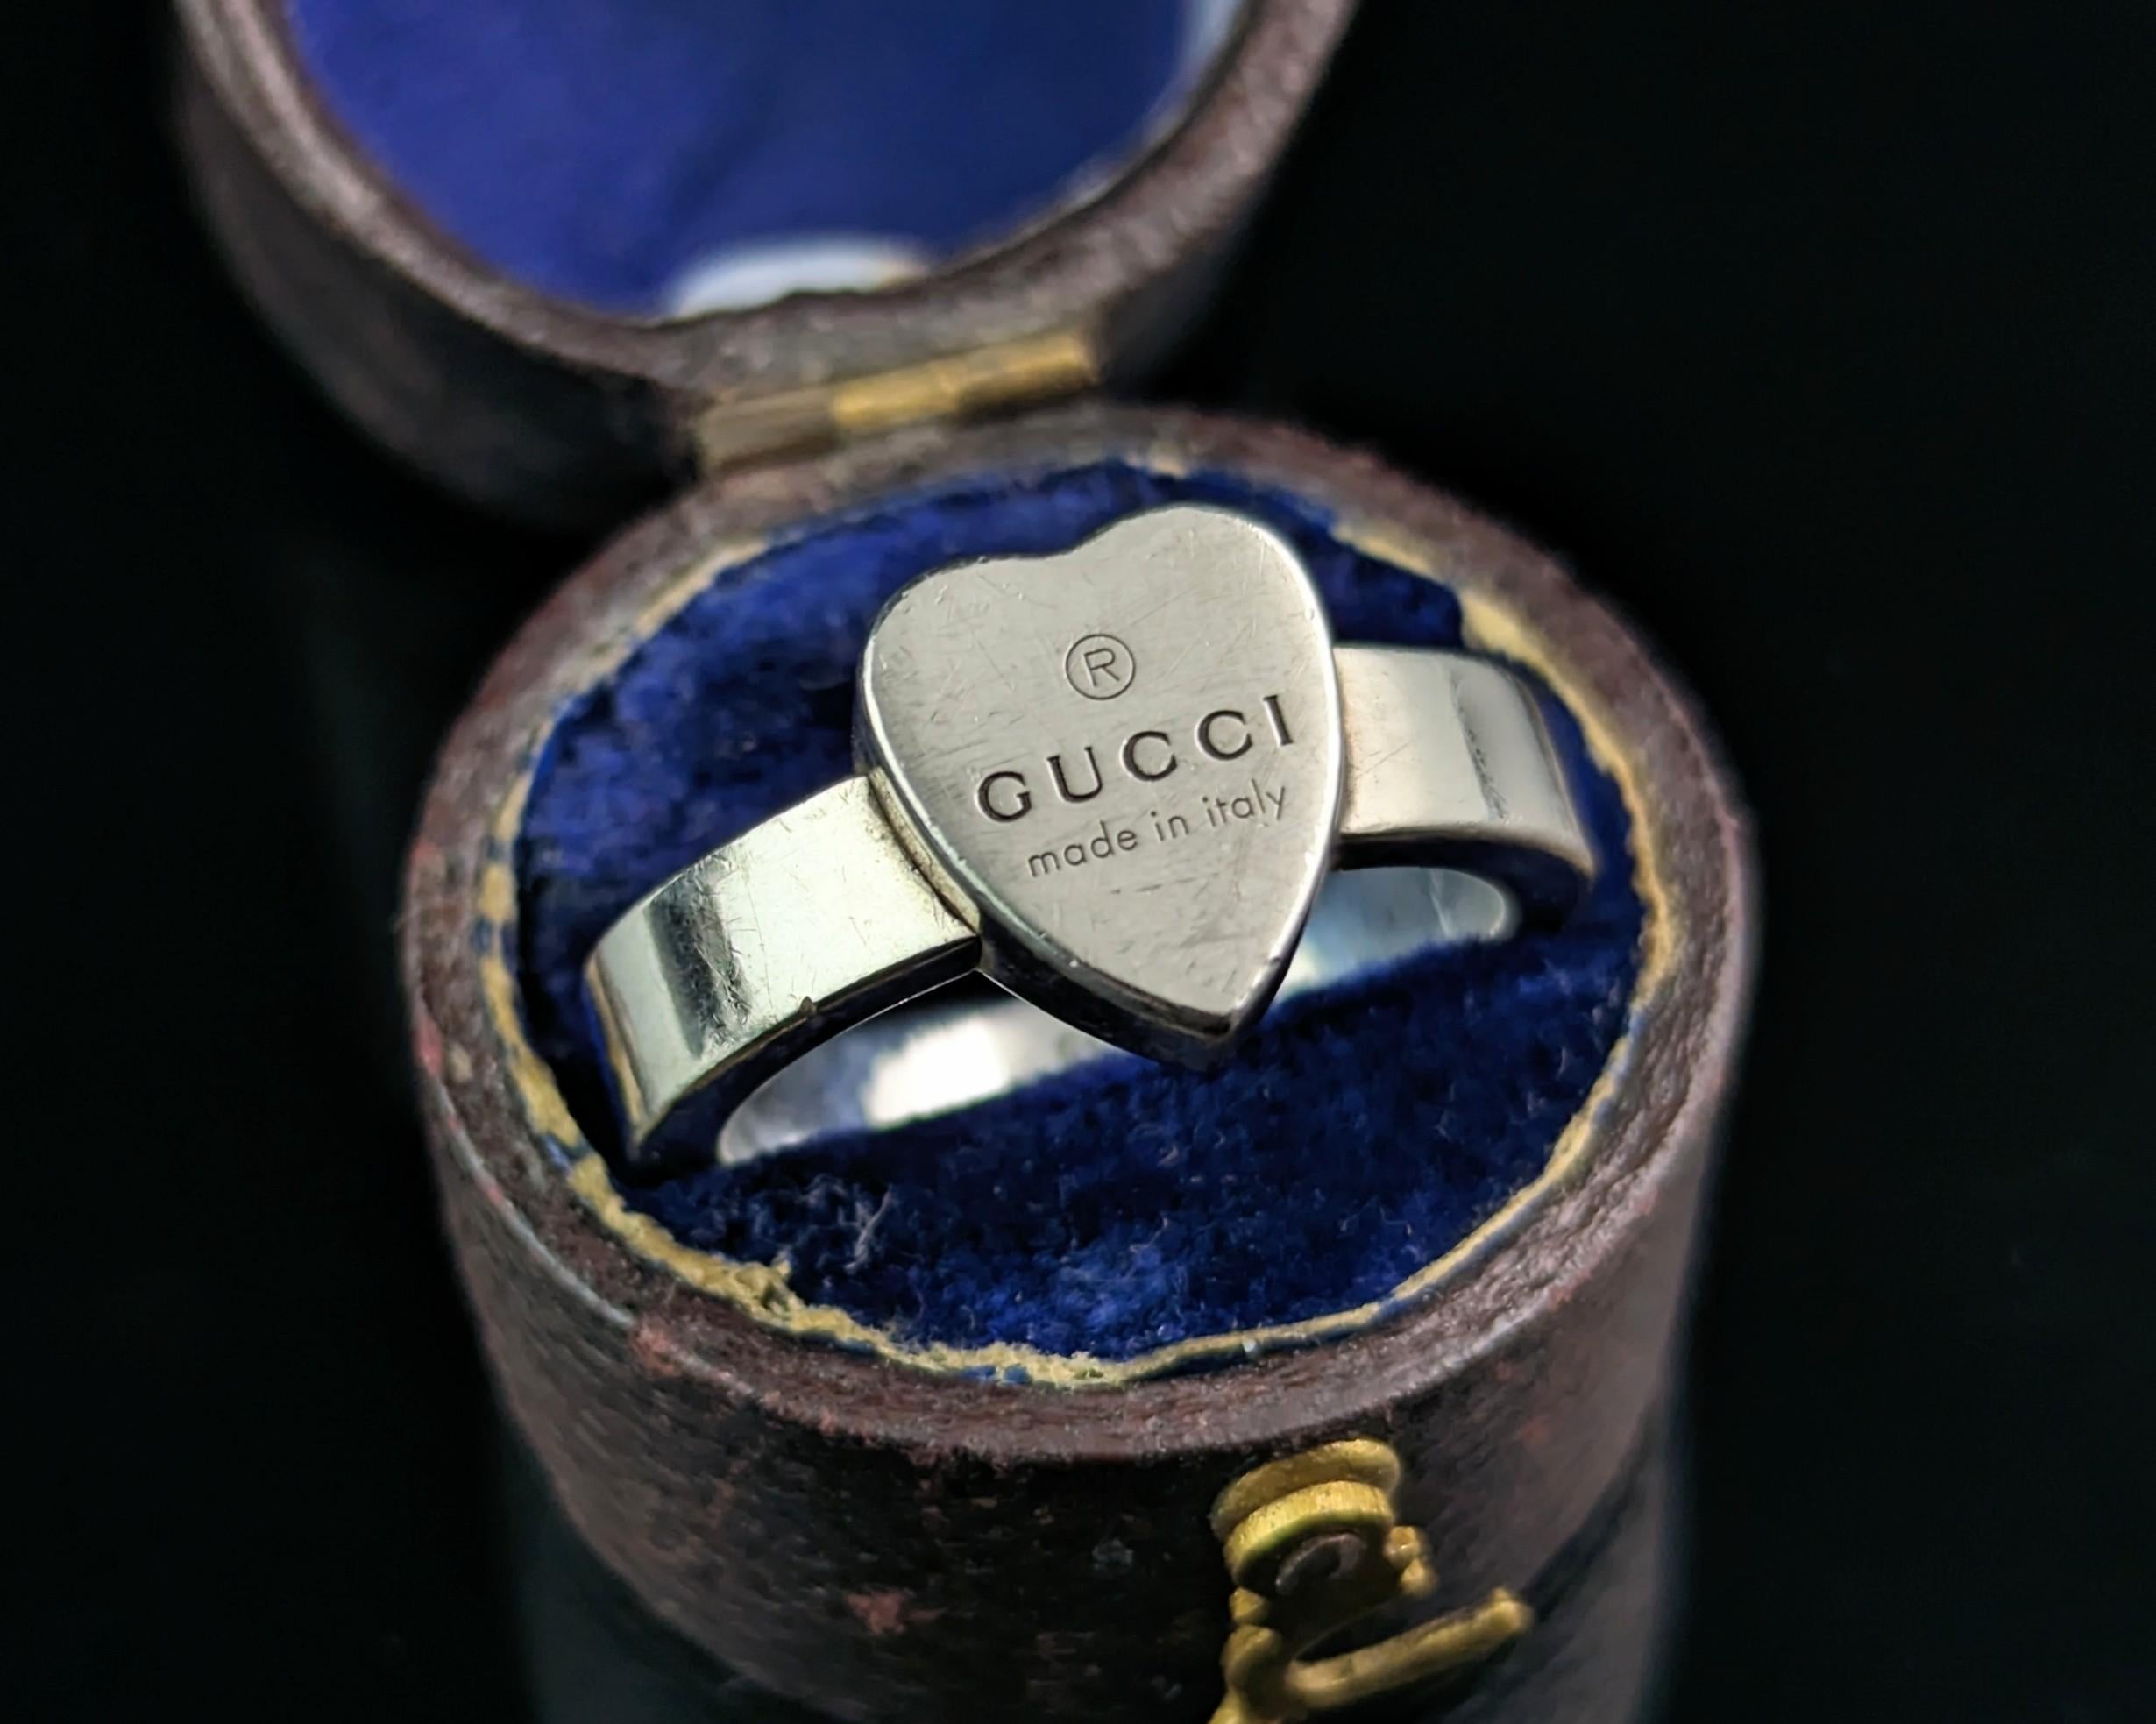 Une élégante bague de marque Gucci en argent sterling avec un cœur.

Pièce classique et intemporelle des années 2000, il s'agit d'un anneau épais semblable à une chevalière avec une face en forme de cœur. 

Il s'agit d'une pièce solide, accompagnée